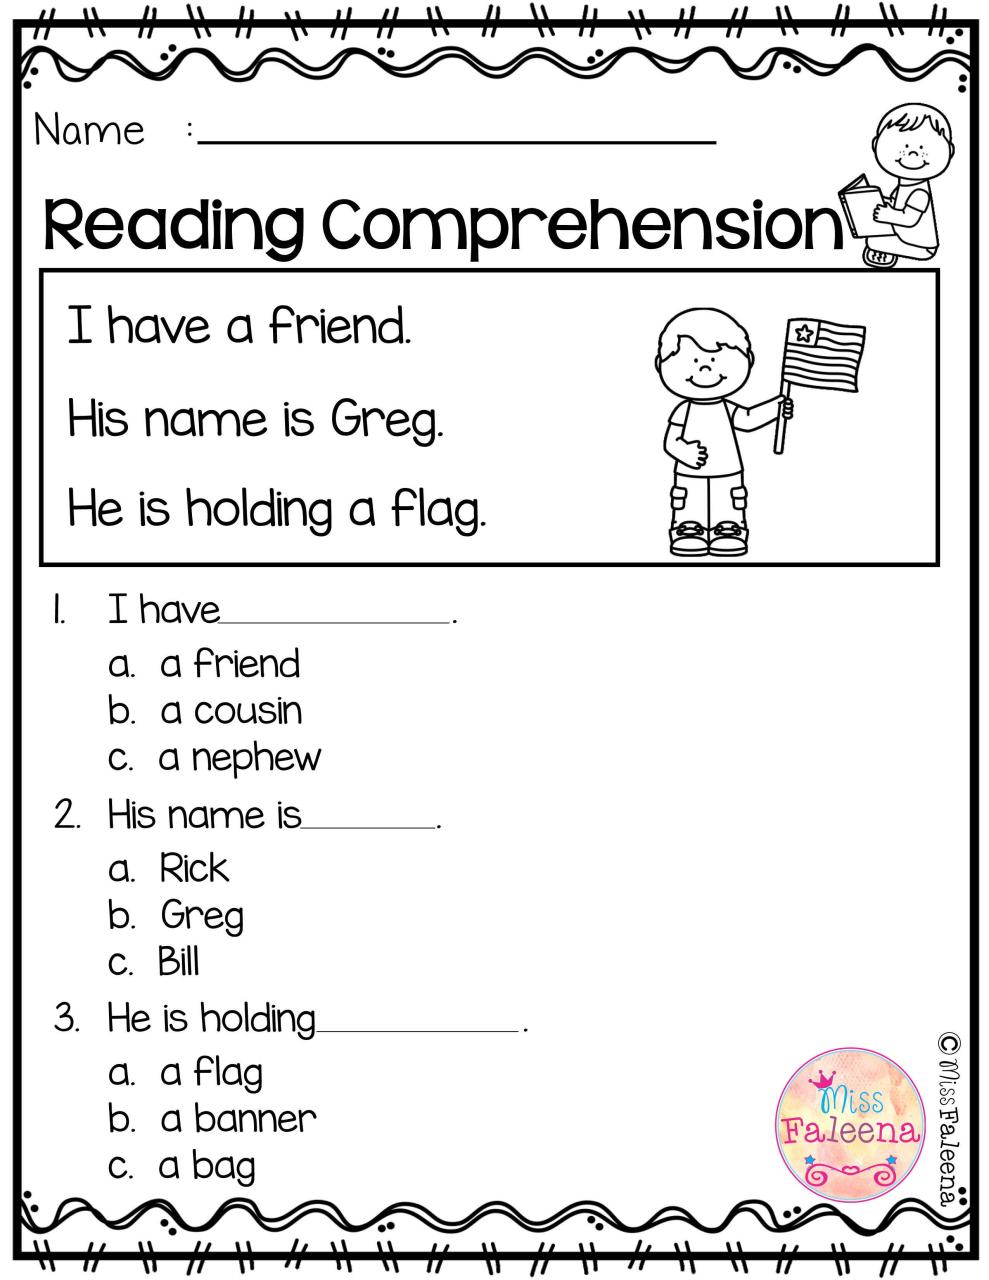 Reading Comprehension Worksheets For Kindergarten Free